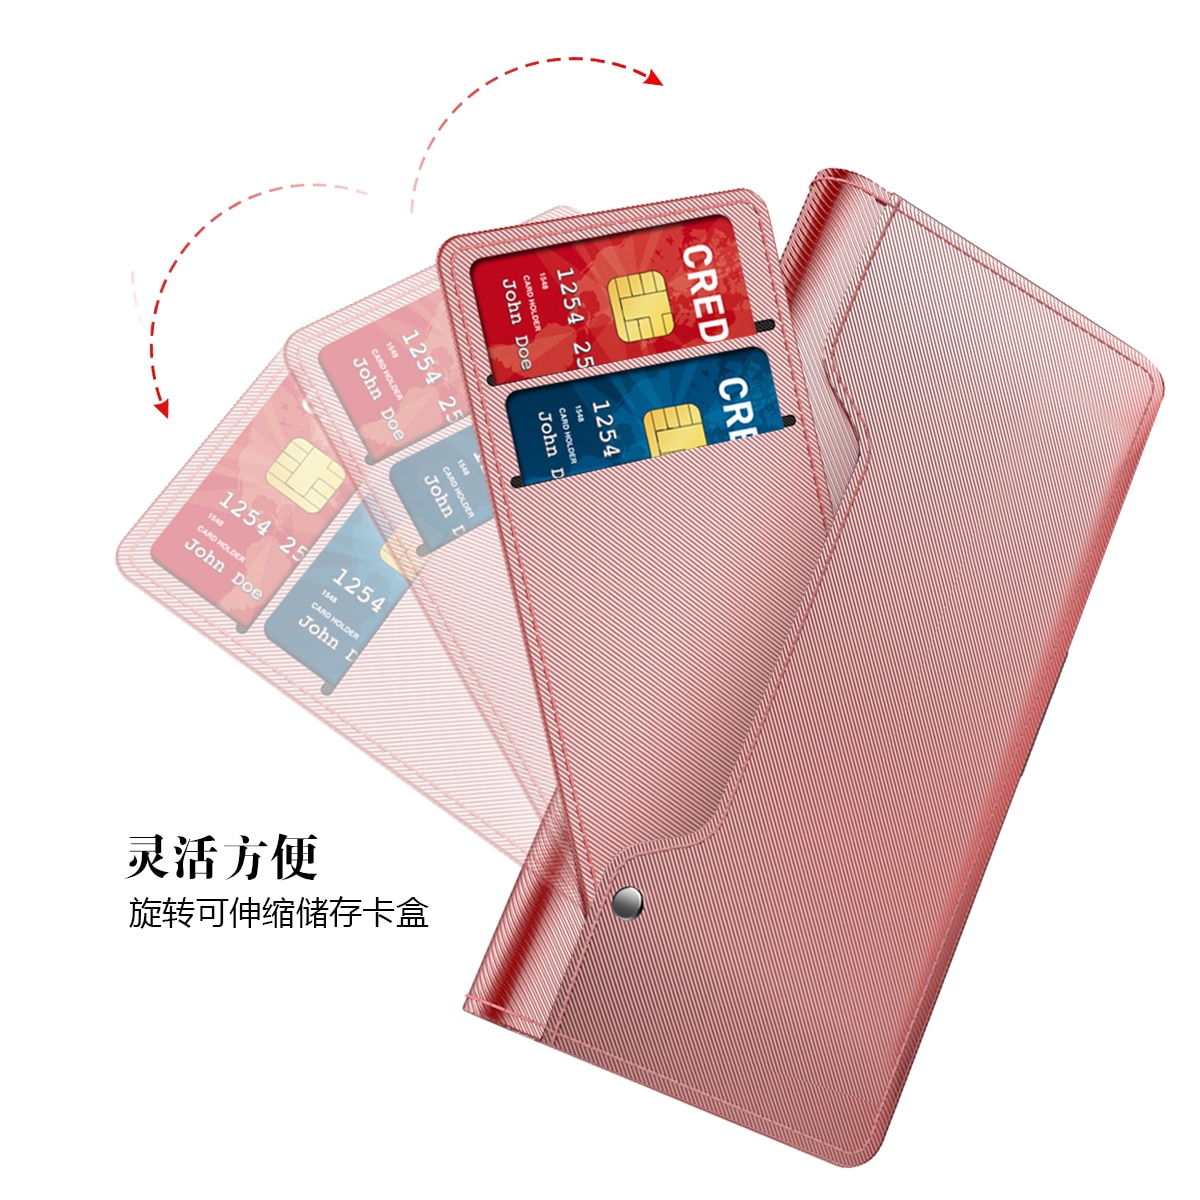 Samsung Galaxy A53 Wallet Case Mirror Pink Gold